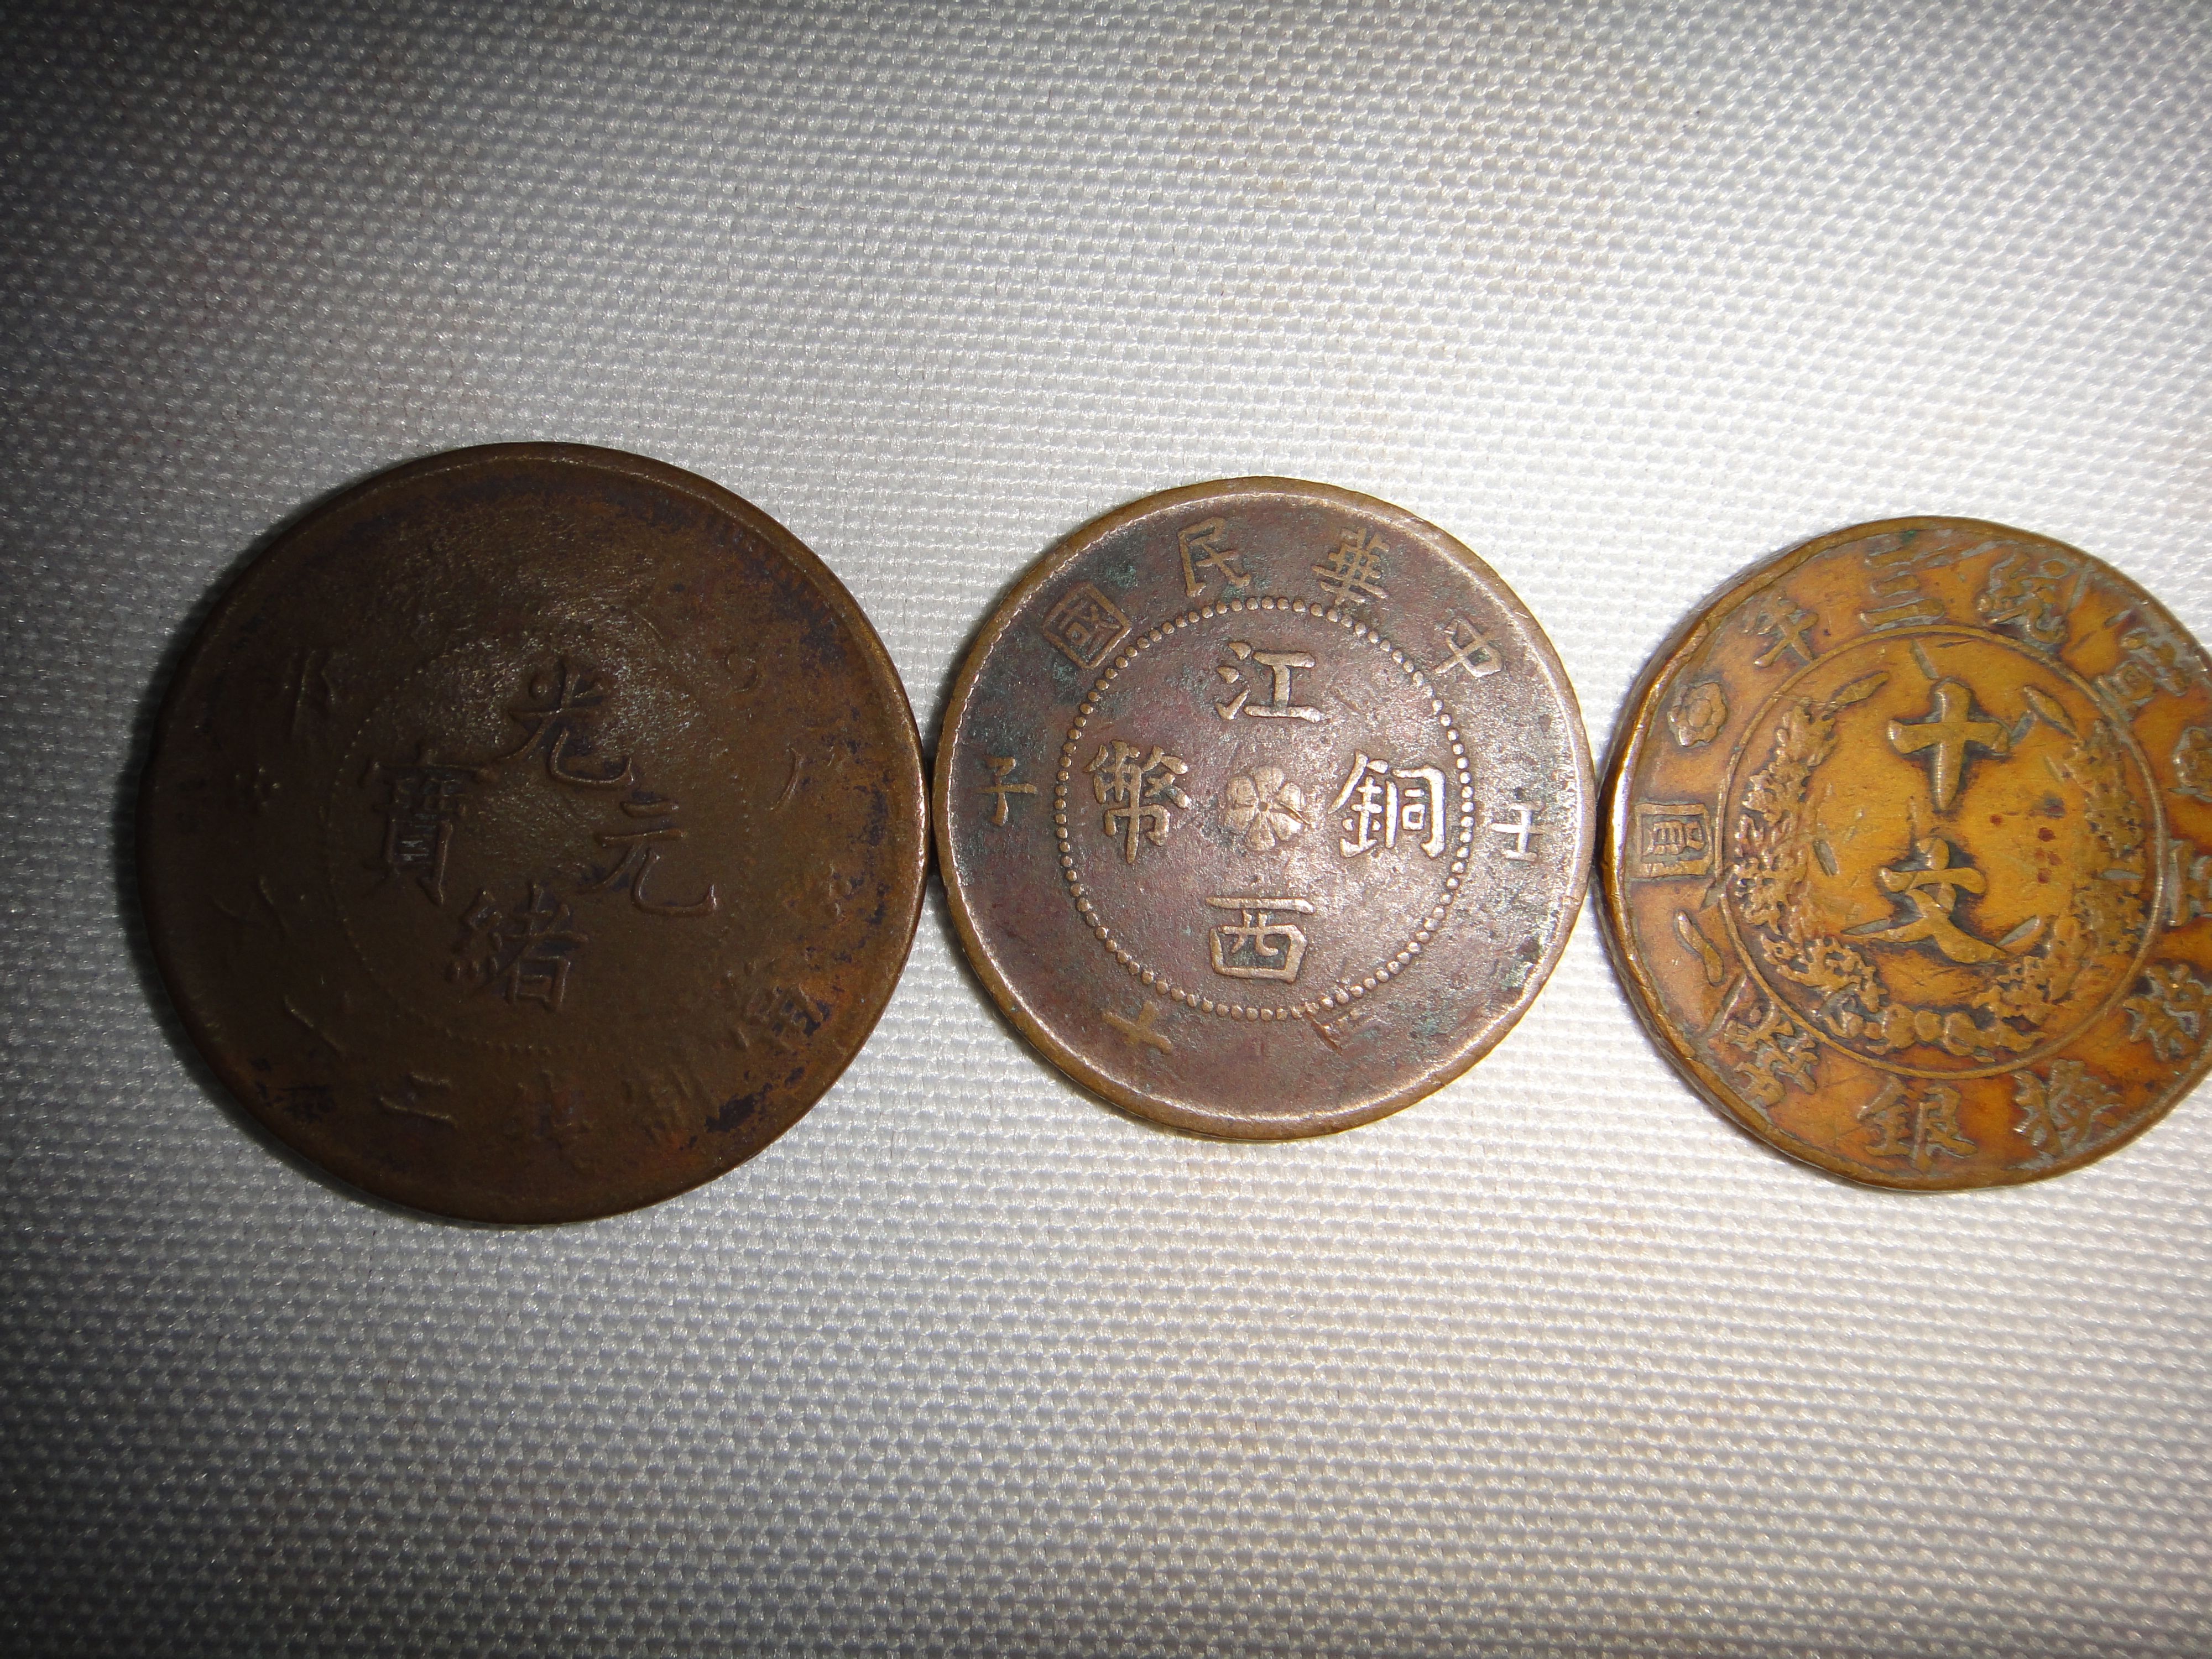 酒泉寿字金锭交易收购中心—收古钱币的收购联系方式